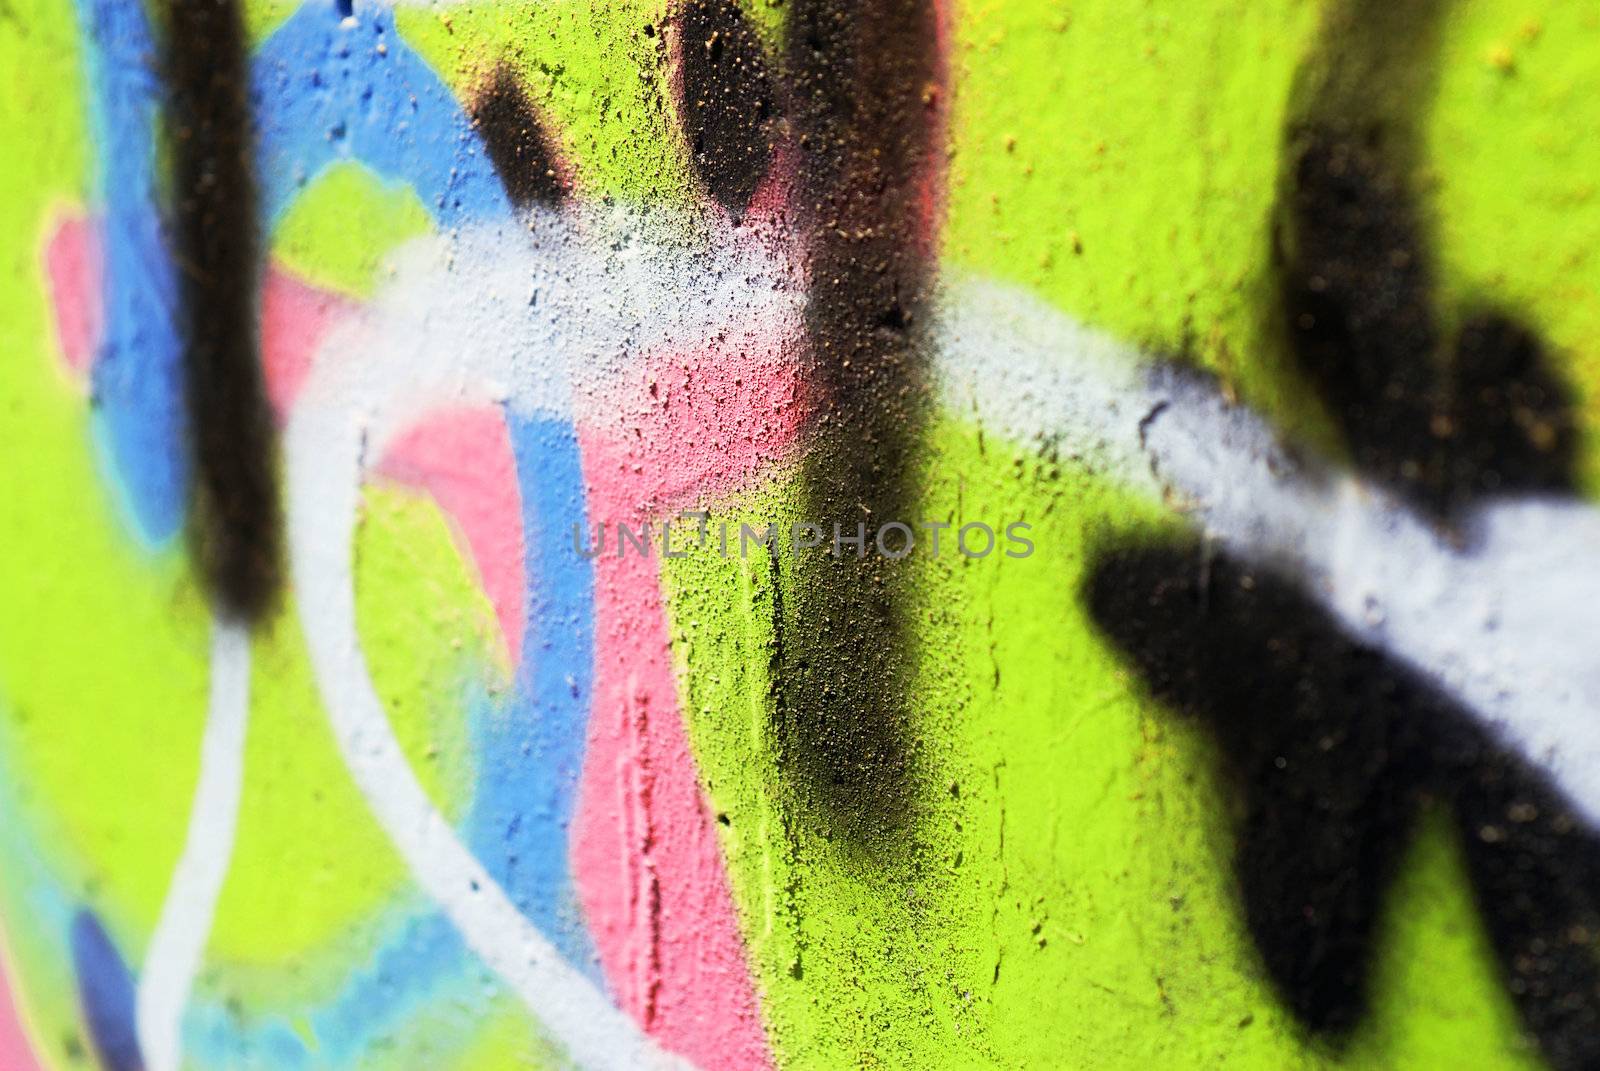 Bright Graffiti Close-Up by pwillitts